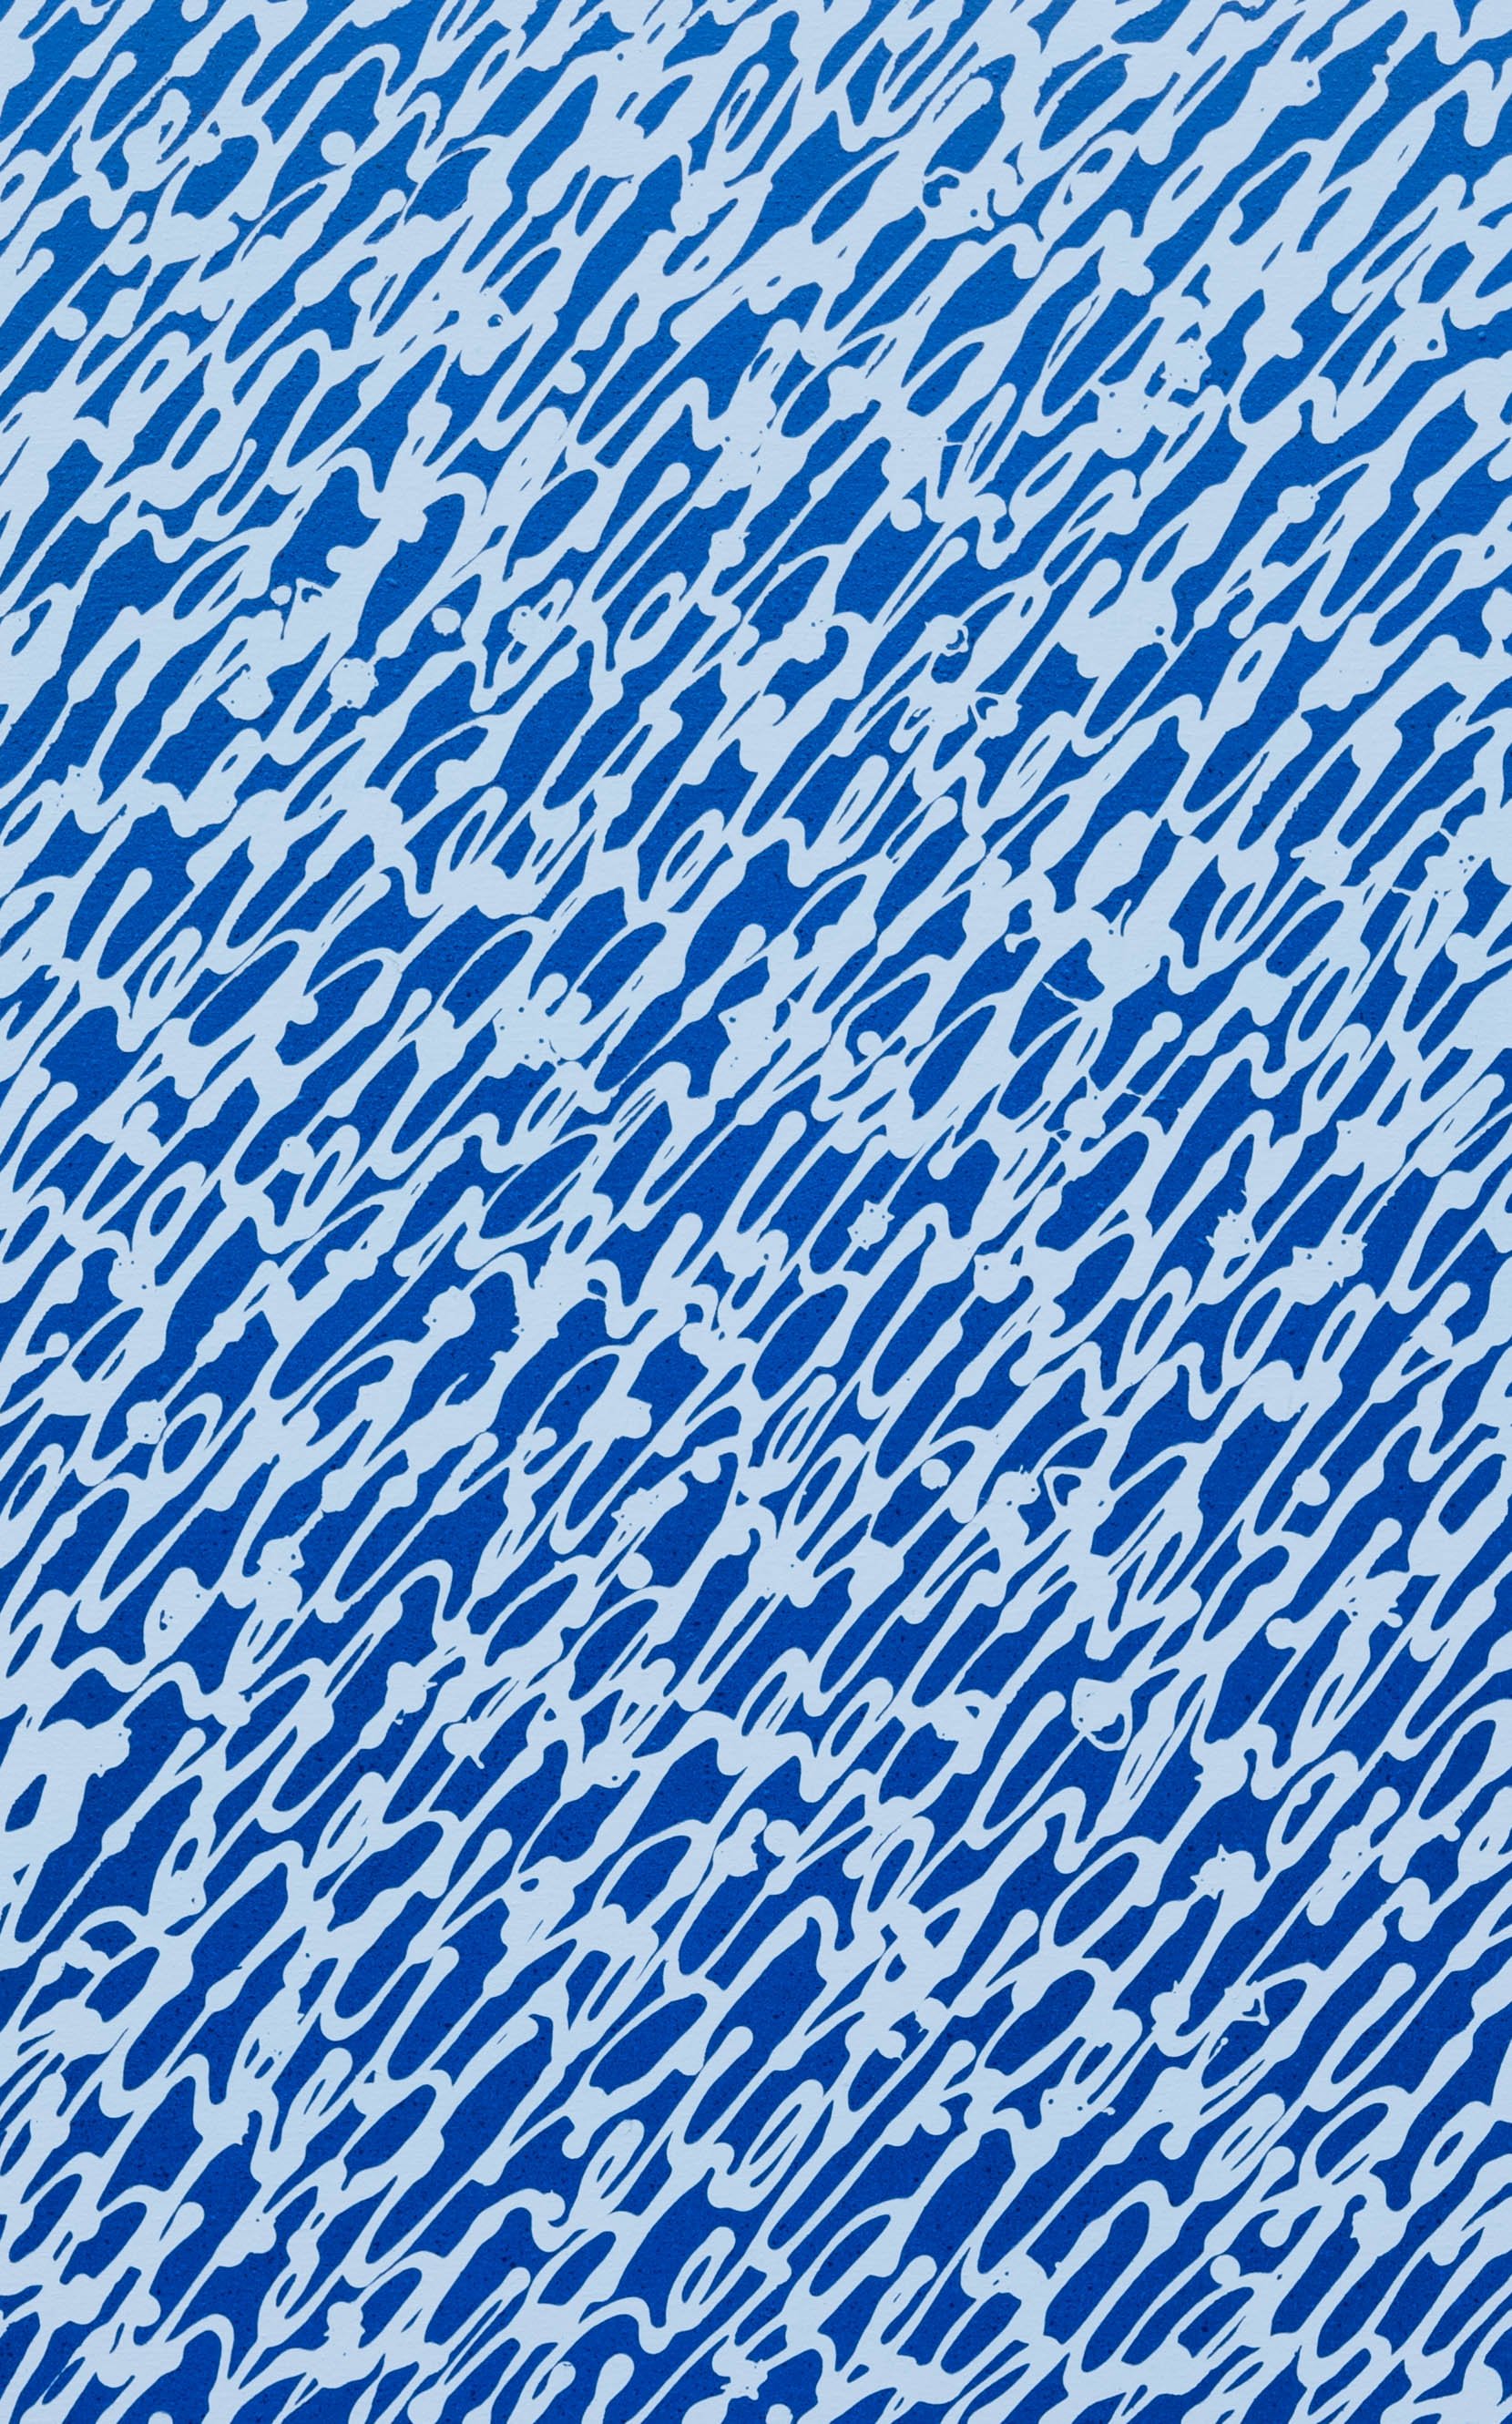 BLUE SERENITY #2 - 116X73cm - Acrylique et spray sur toile - 2022.jpg